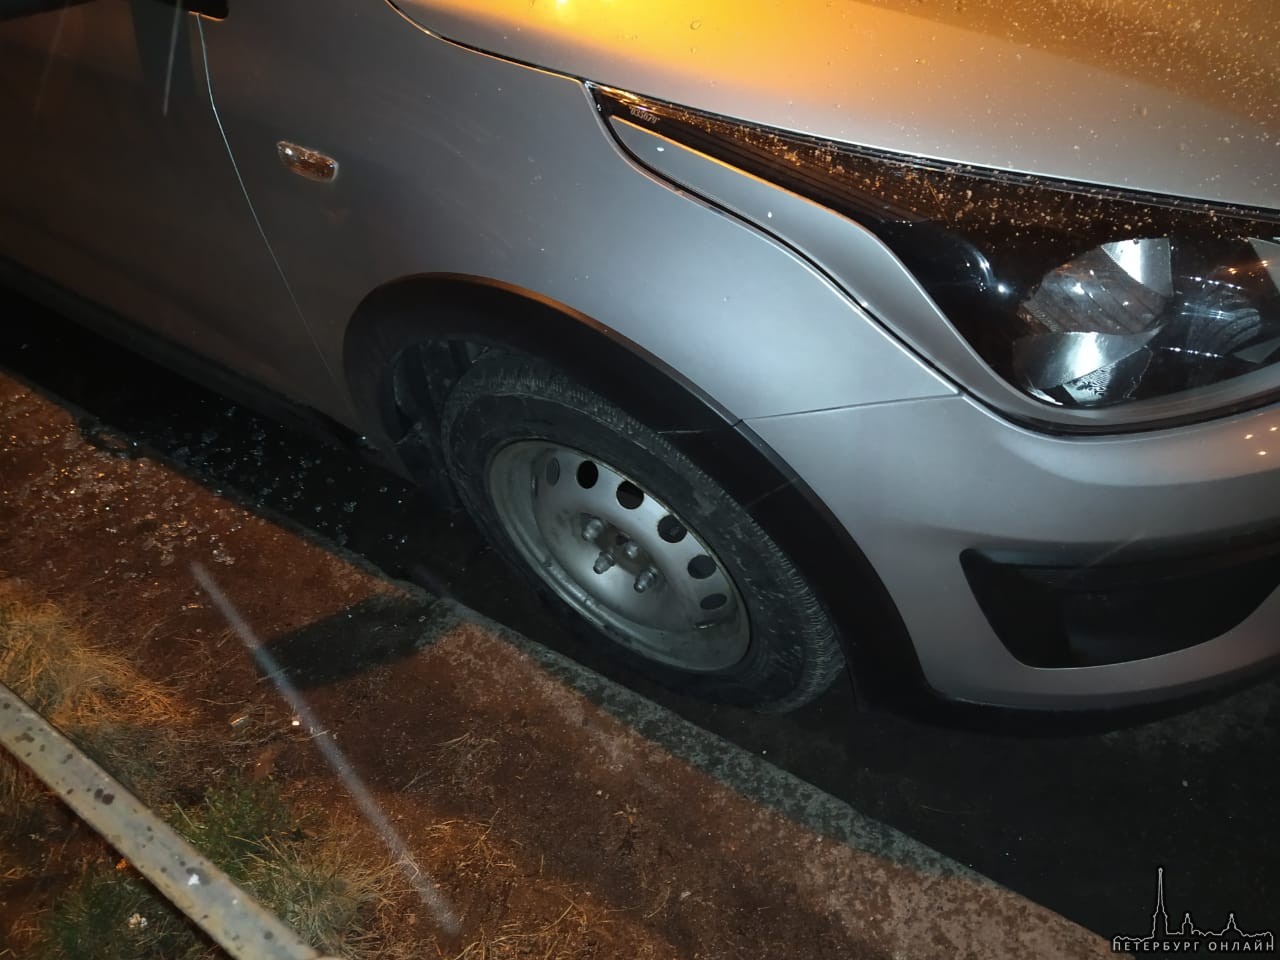 4 апреля в 01:30 на Можайской улице д. 6 был намеренно повреждён автомобиль. Свидетелей прошу отклик...